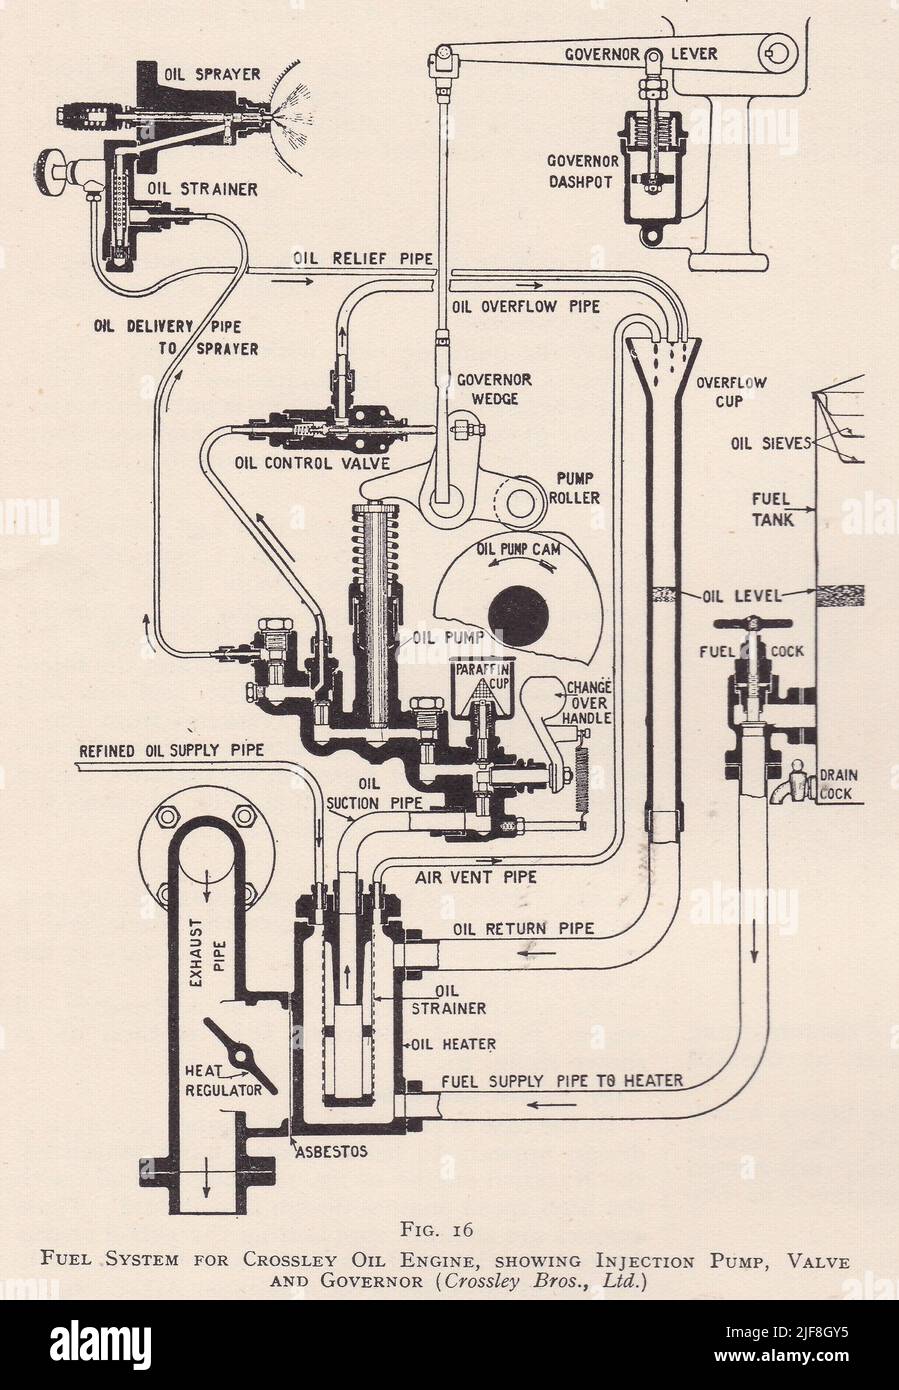 Diagrama vintage de un sistema de combustible para Crossley Oil Engine, que muestra la bomba de inyección, la válvula y el gobernador - Crossley Bros. Ltd Foto de stock